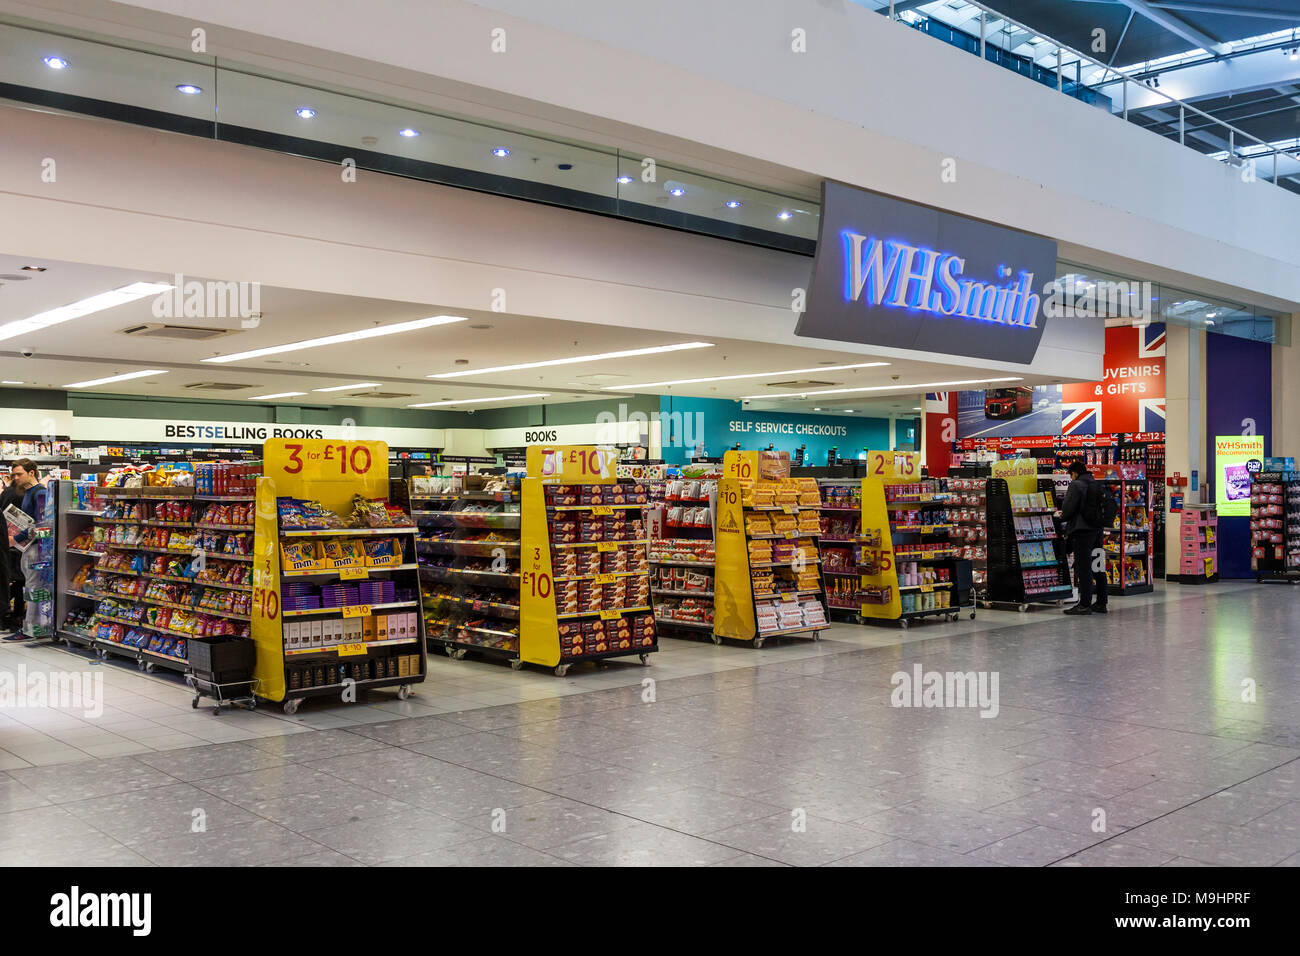 WHSmith Retail Outlet am Flughafen Heathrow Terminal 5, Abflughalle. Großer Eingang mit Displays von Souvenirs und Süßwaren. Stockfoto